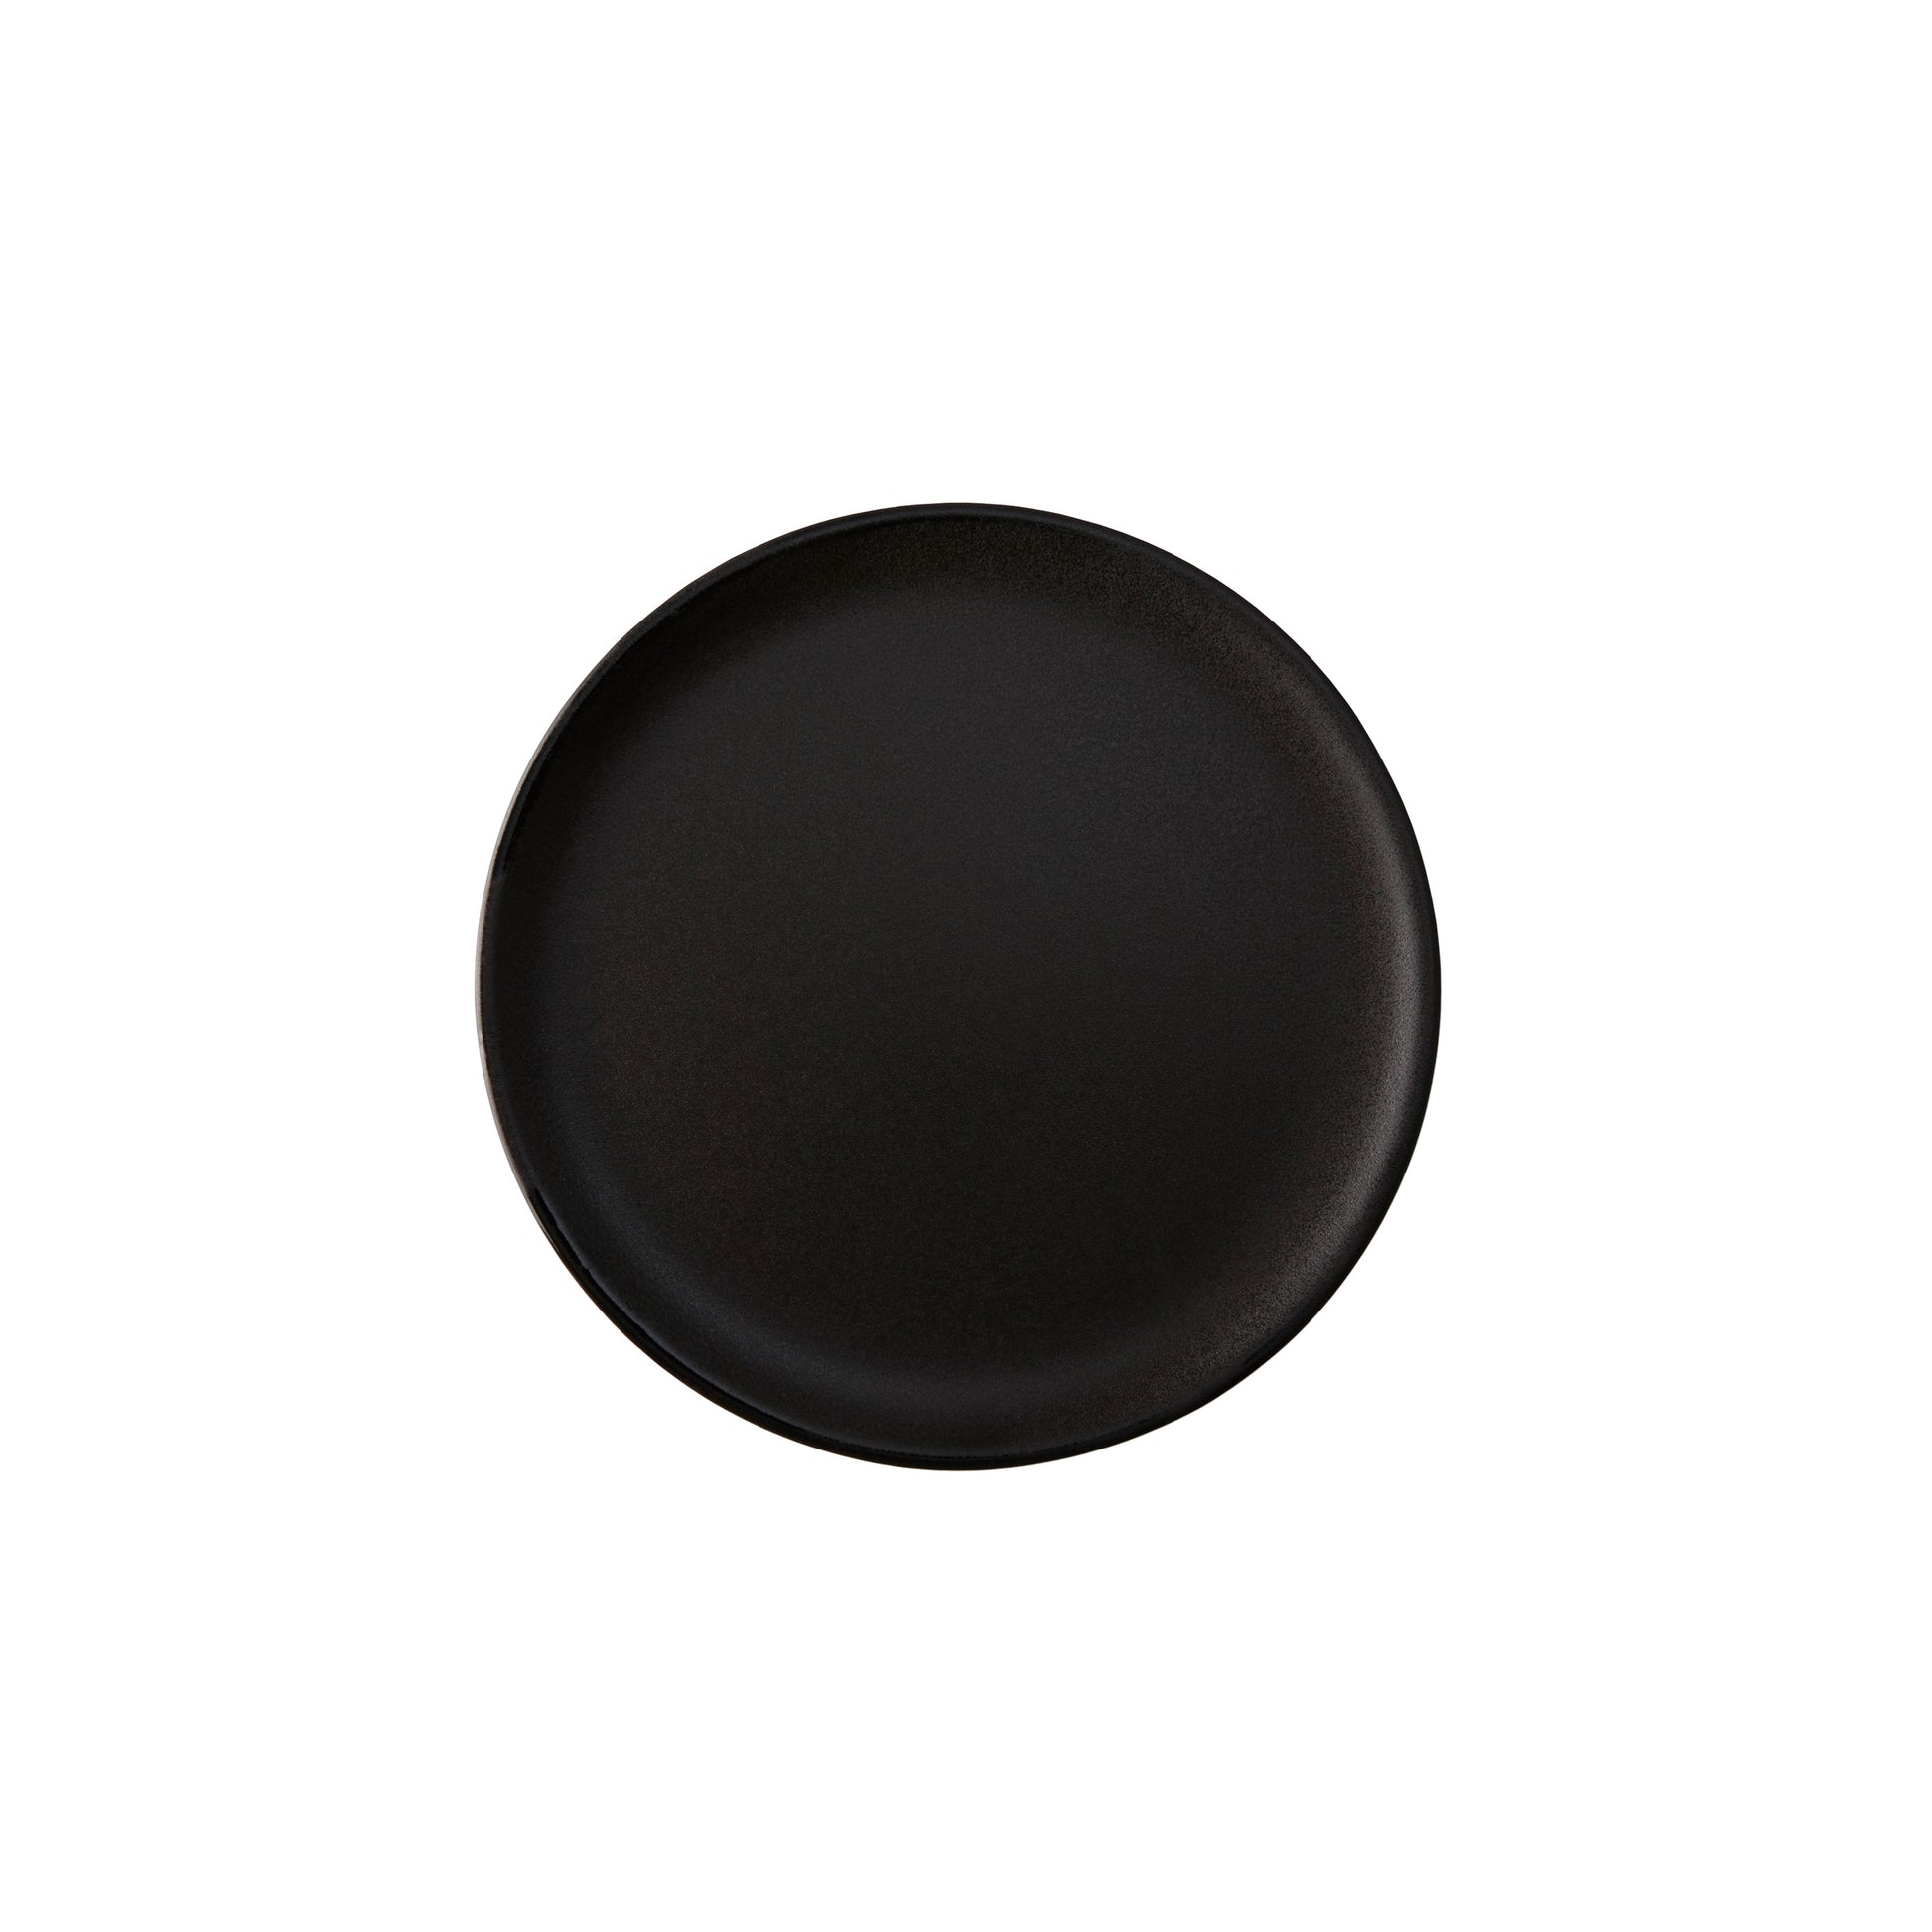 DIMM: Aida RAW diskur · 20 cm · Titanium black